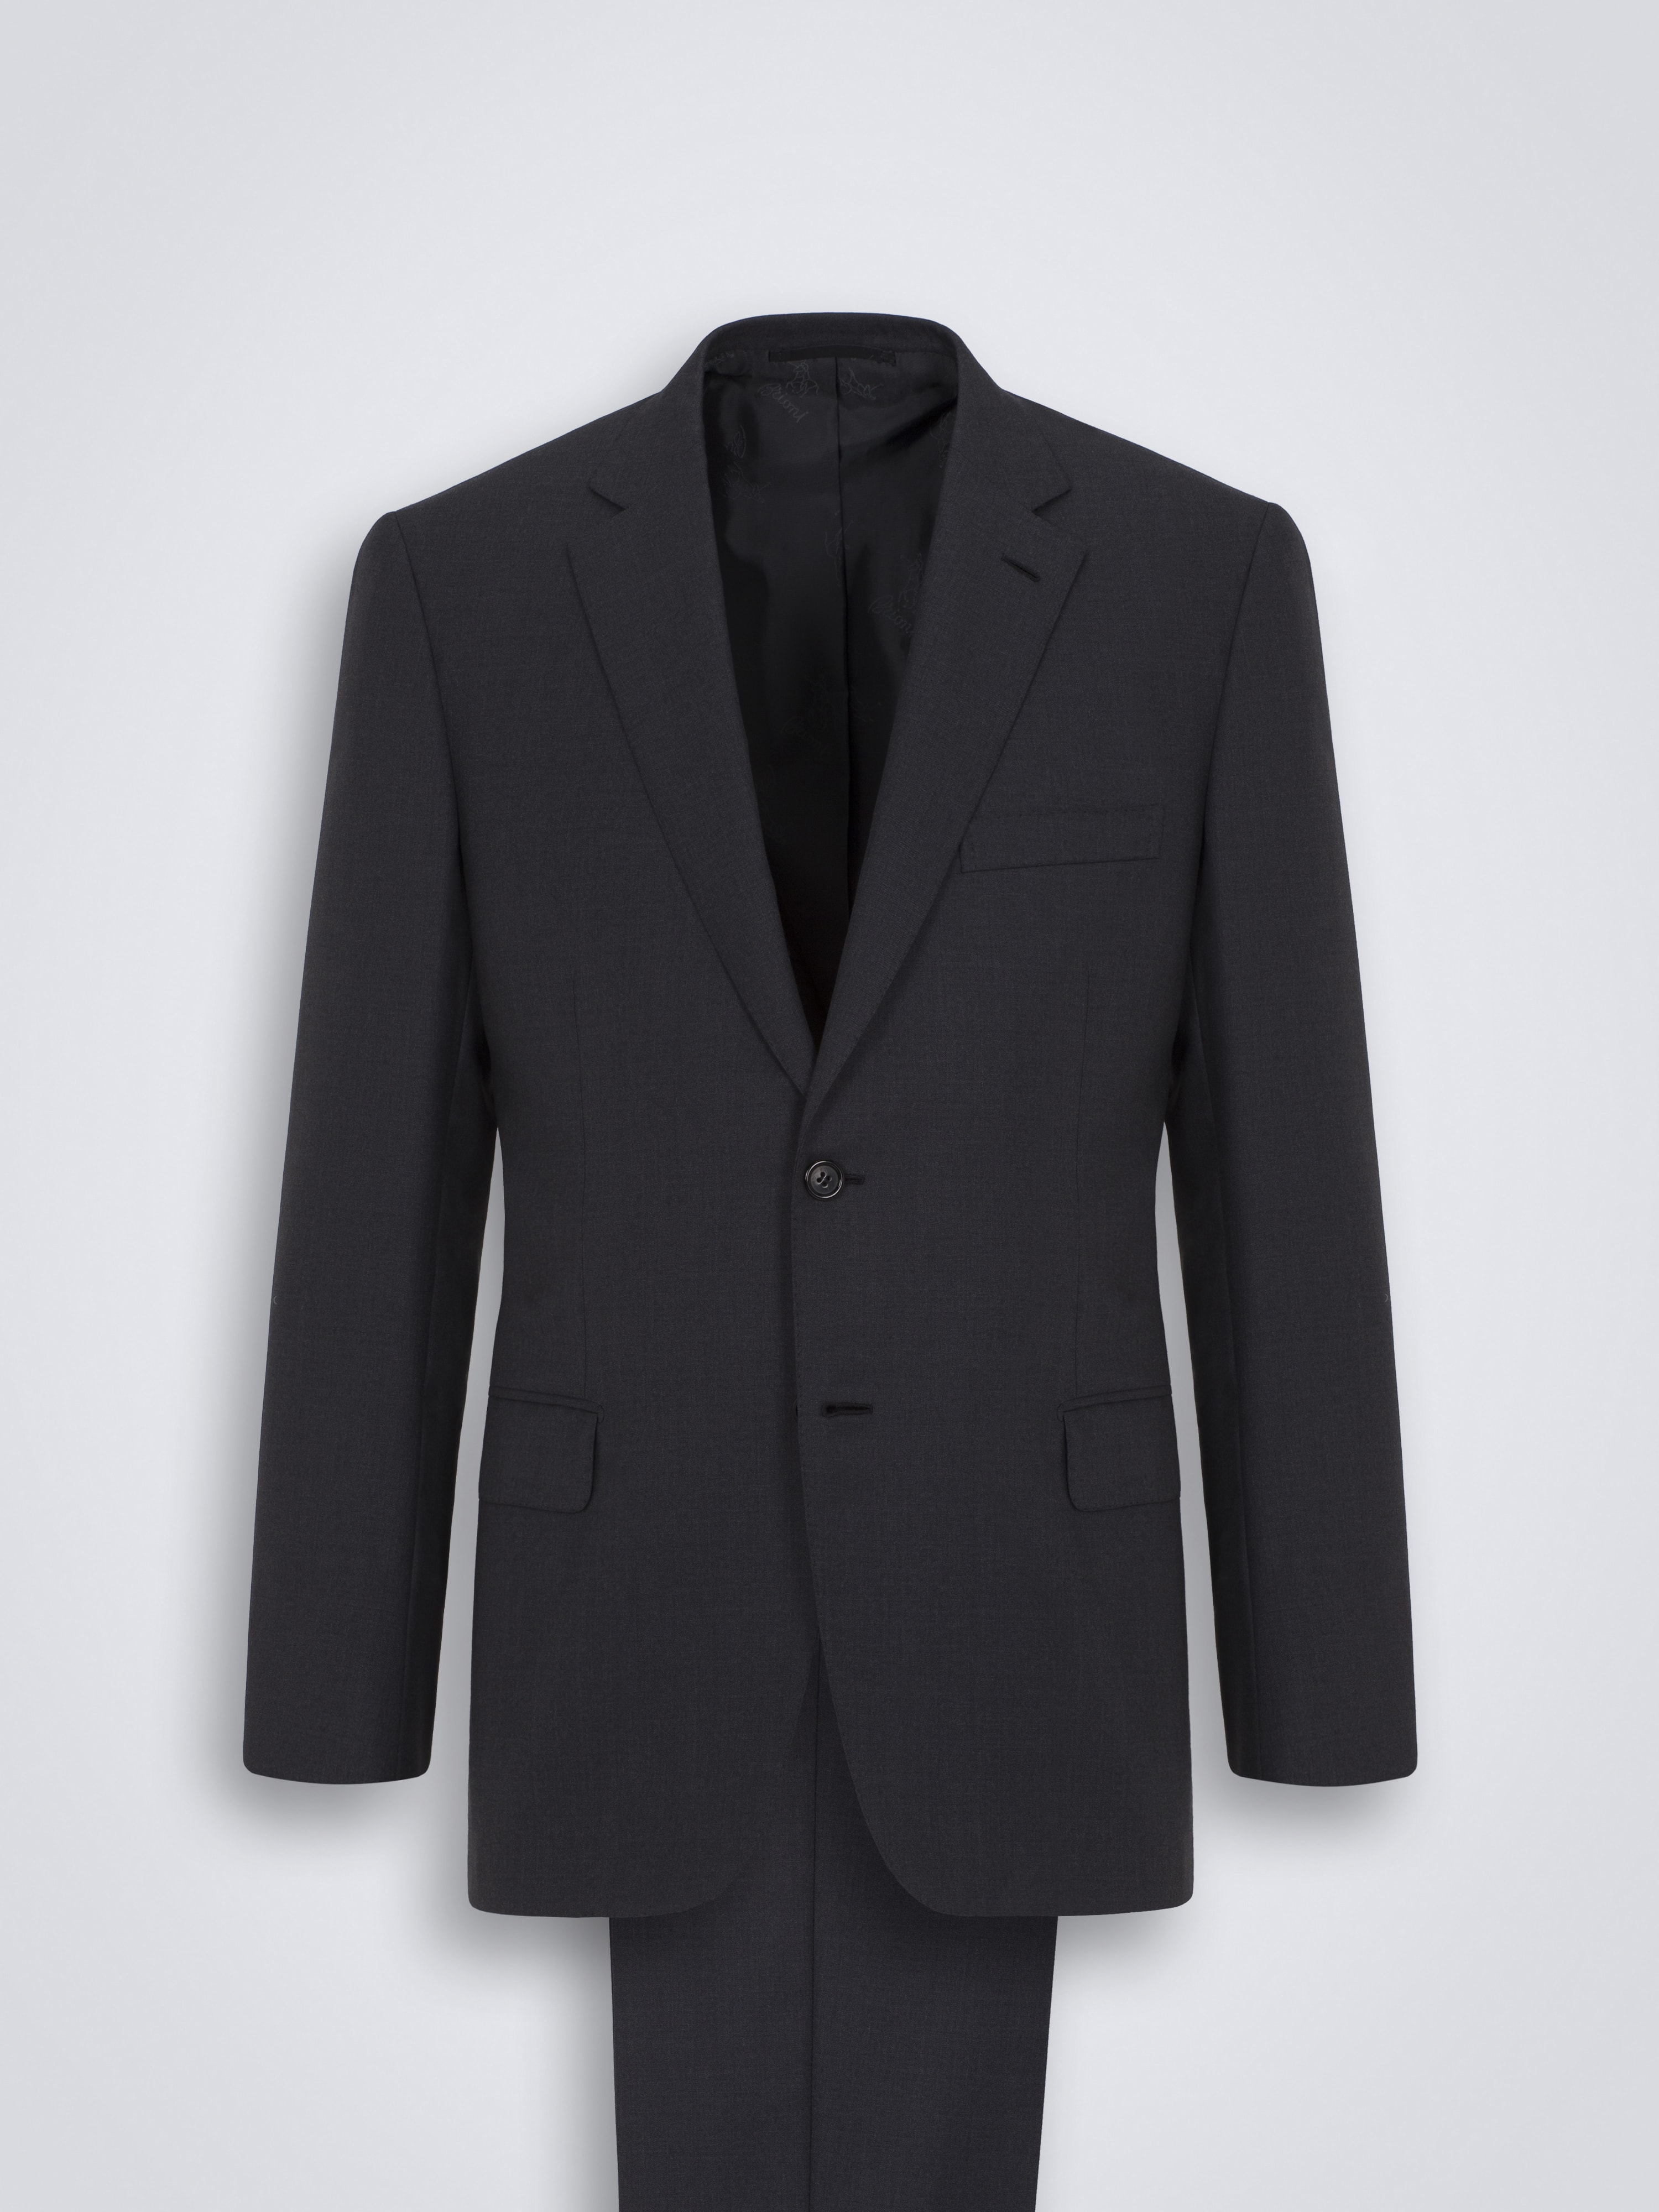 Essential' ブルニコ スーツ グレー スーパー160バージンウール 